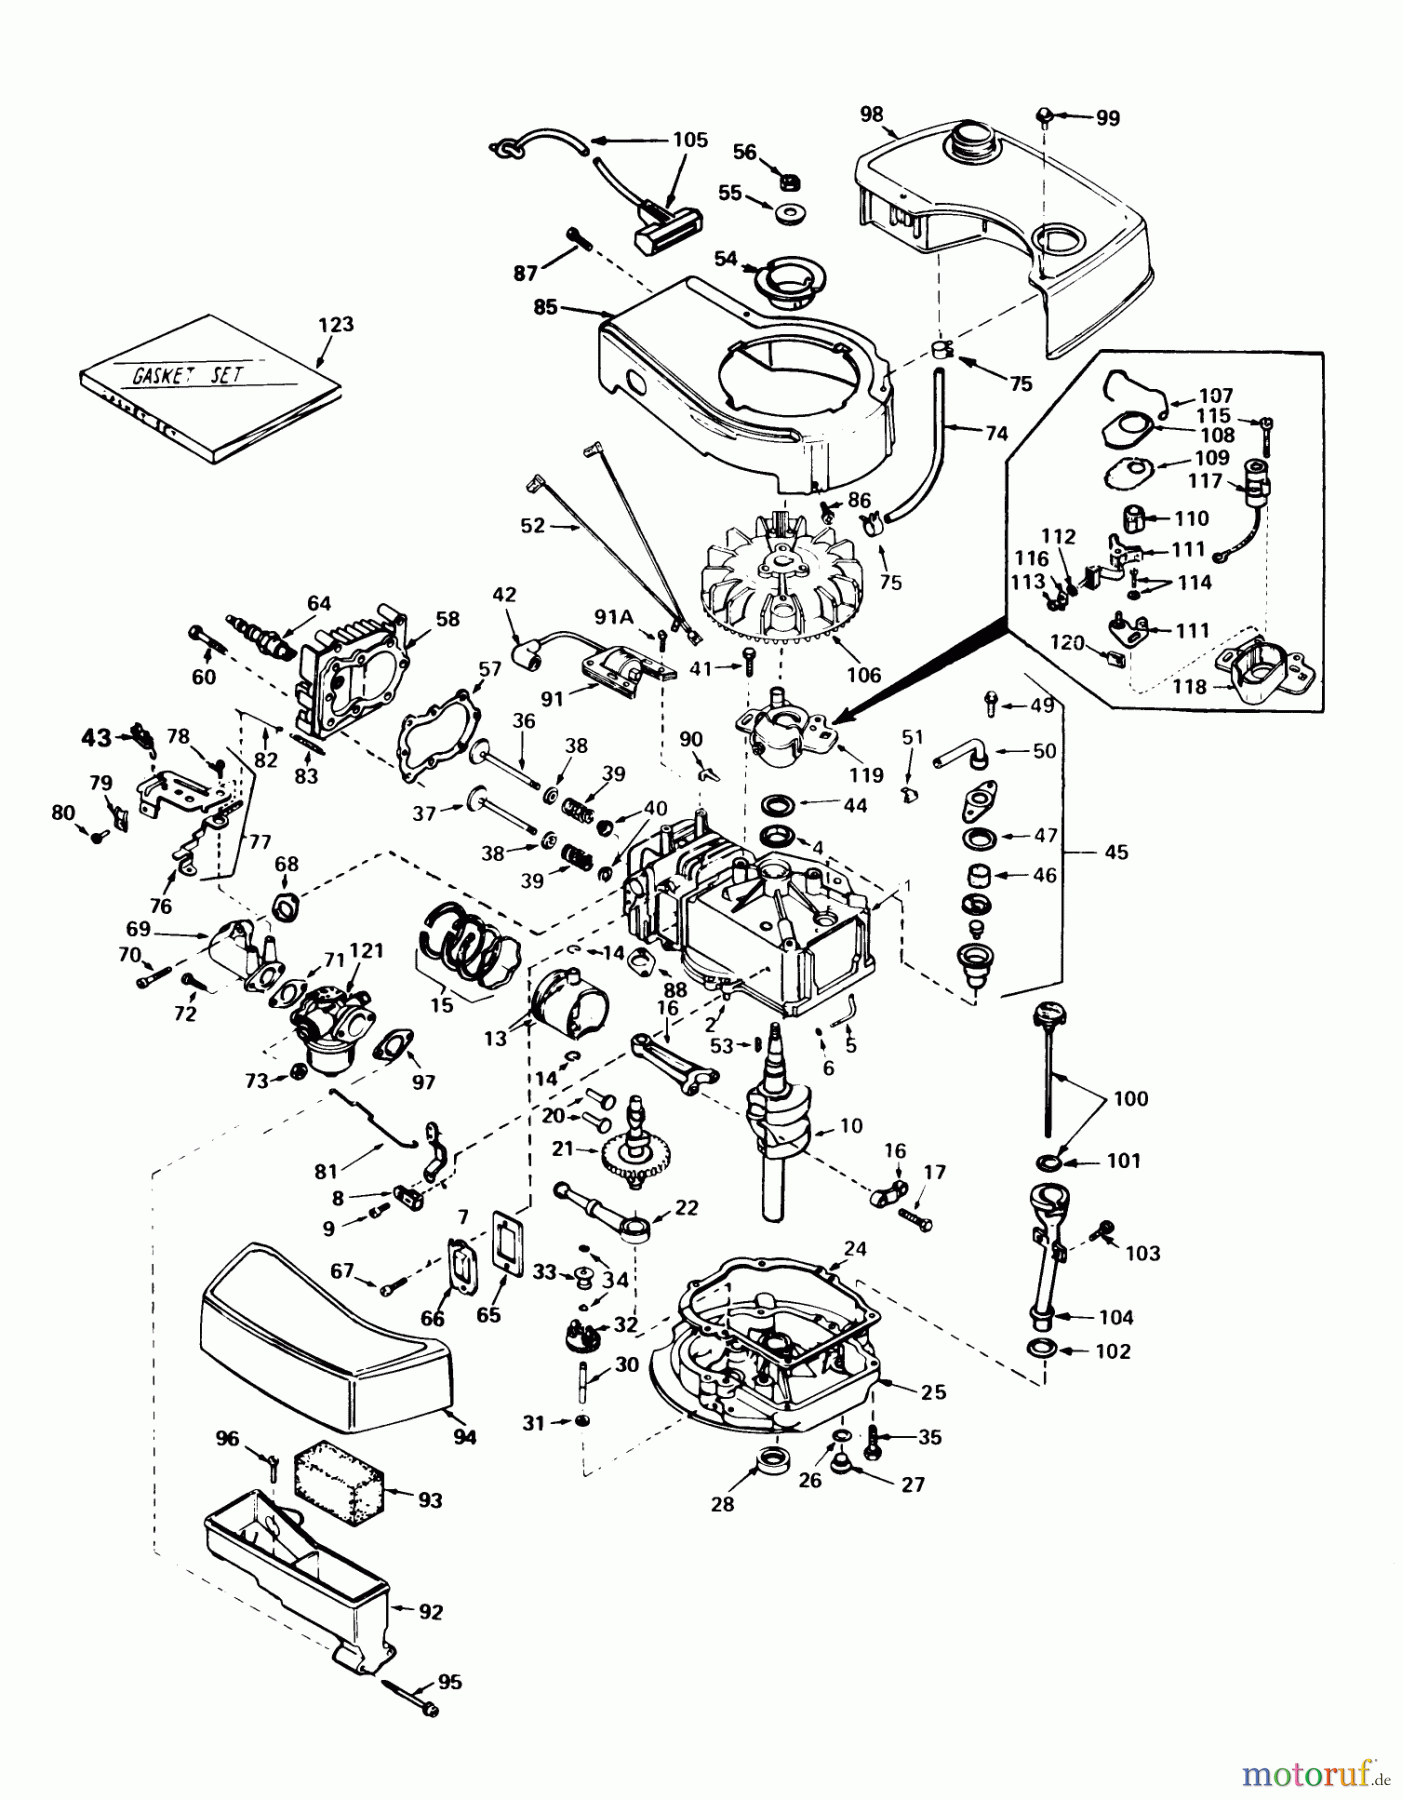  Toro Neu Mowers, Walk-Behind Seite 1 20715 - Toro Lawnmower, 1979 (9000001-9999999) ENGINE TECUMSEH MODEL NO. TNT 100-10065C